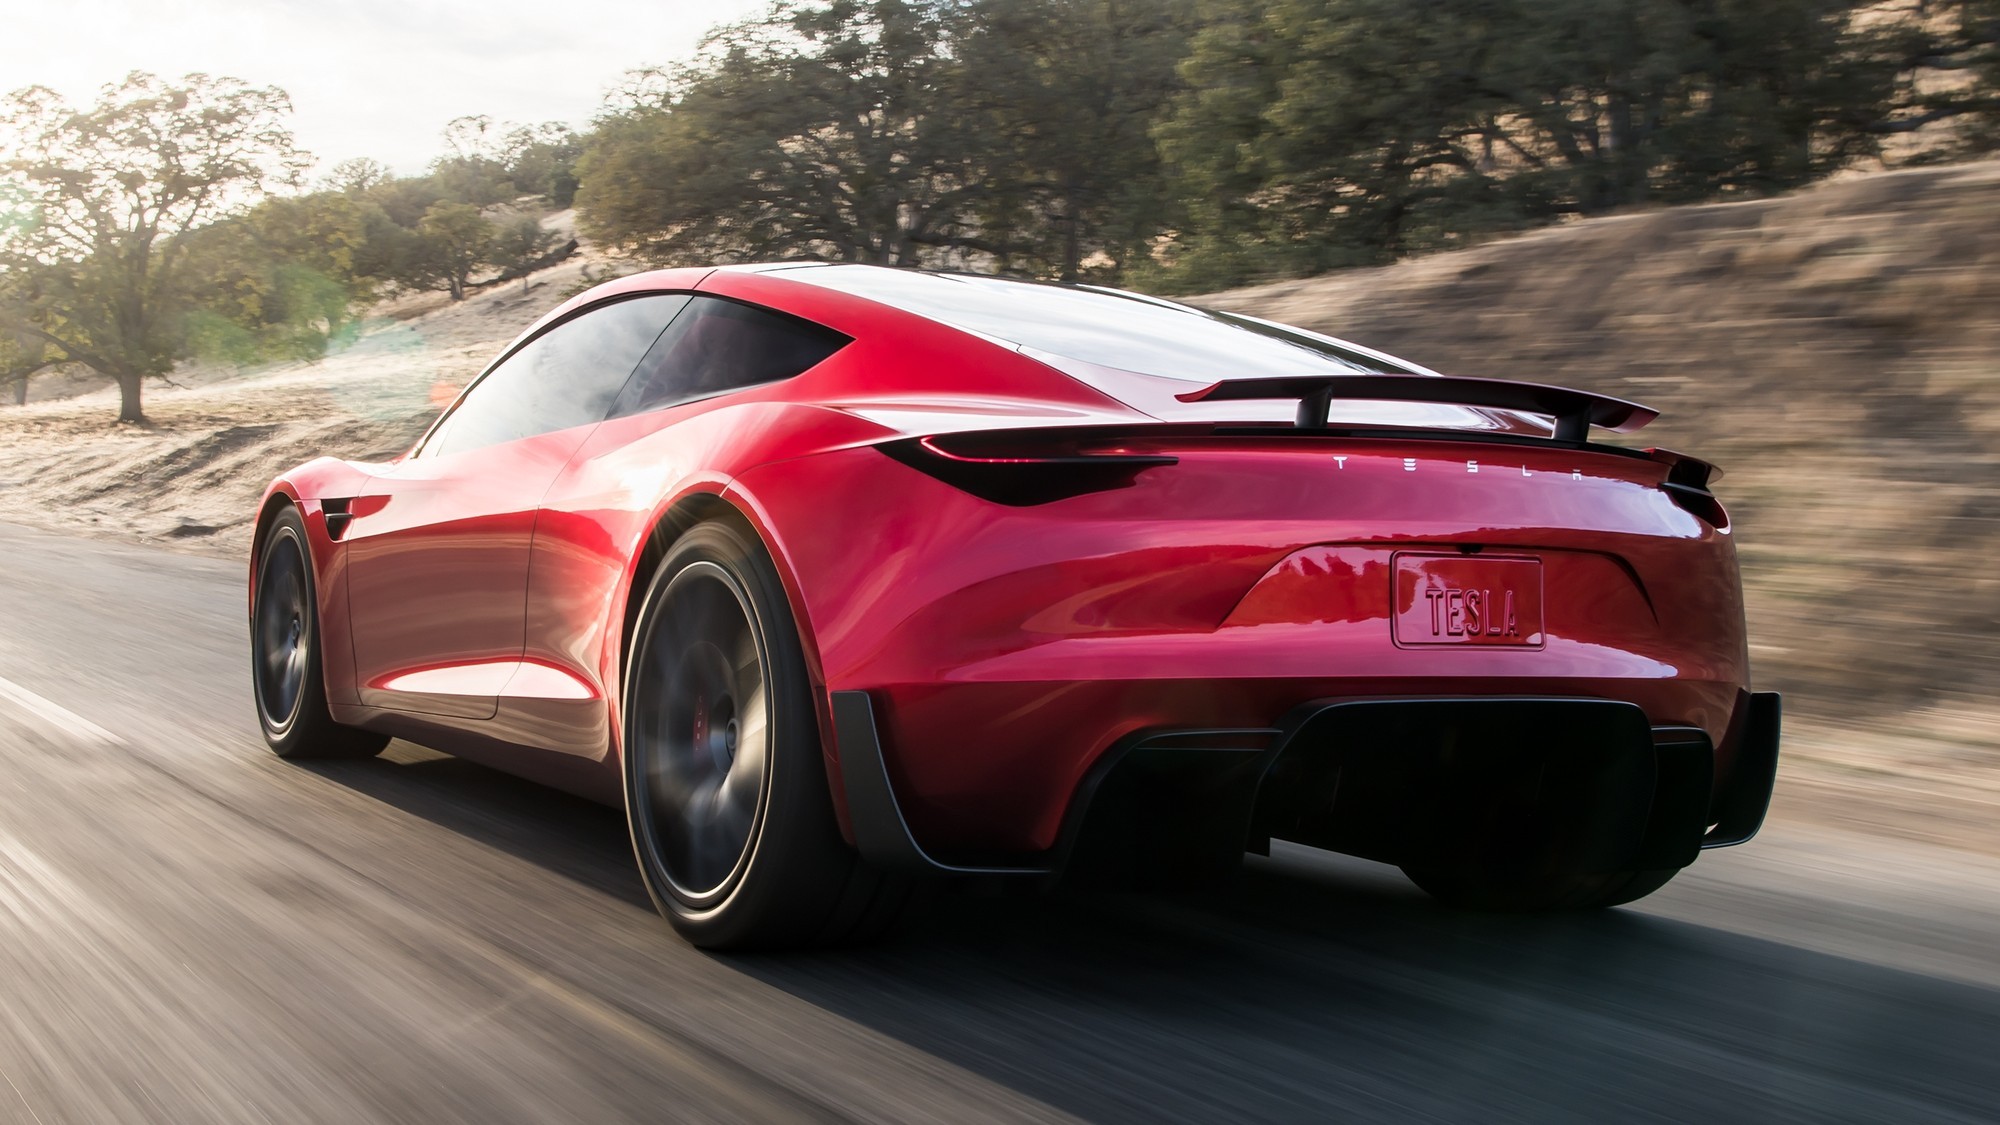 Идёт на взлёт: Илон Маск пообещал снабдить новый Tesla Roadster ракетными технологиями авто,авто и мото,автосалон,автосамоделки,водителю на заметку,машины,новости автомира,тюнинг